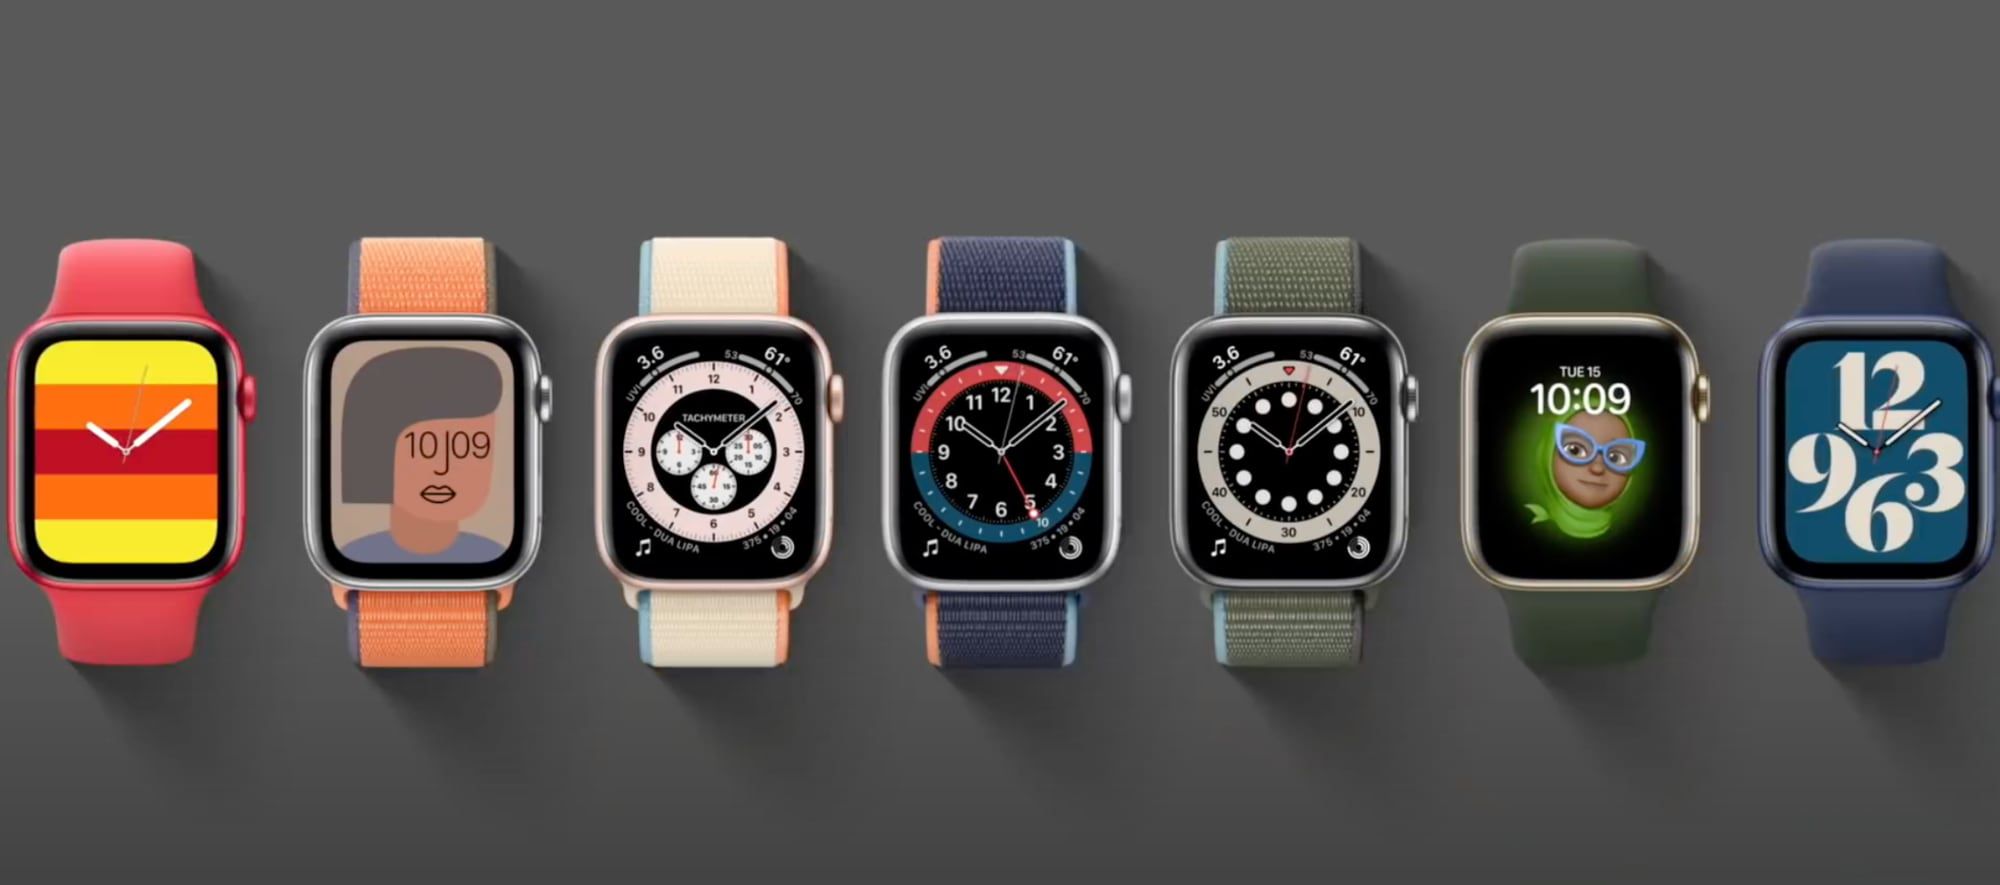 الأخبار 18 سبتمبر 2020
Apple Watch مزودة بأرقام جديدة: هذه كلها